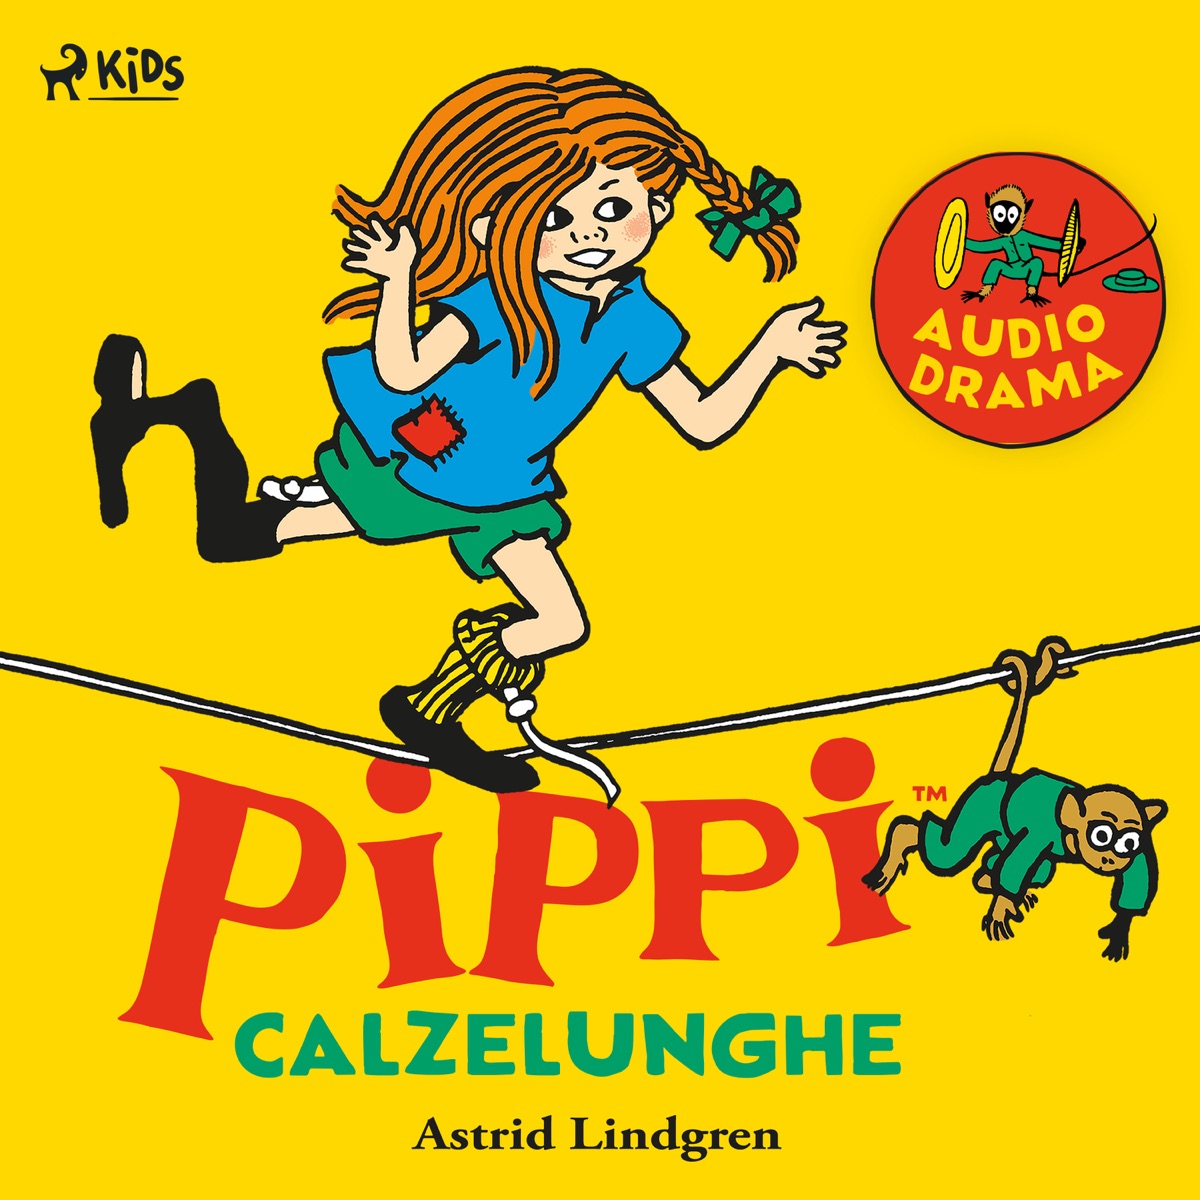 Pippi Calzelunghe - Album by Astrid Lindgren - Apple Music